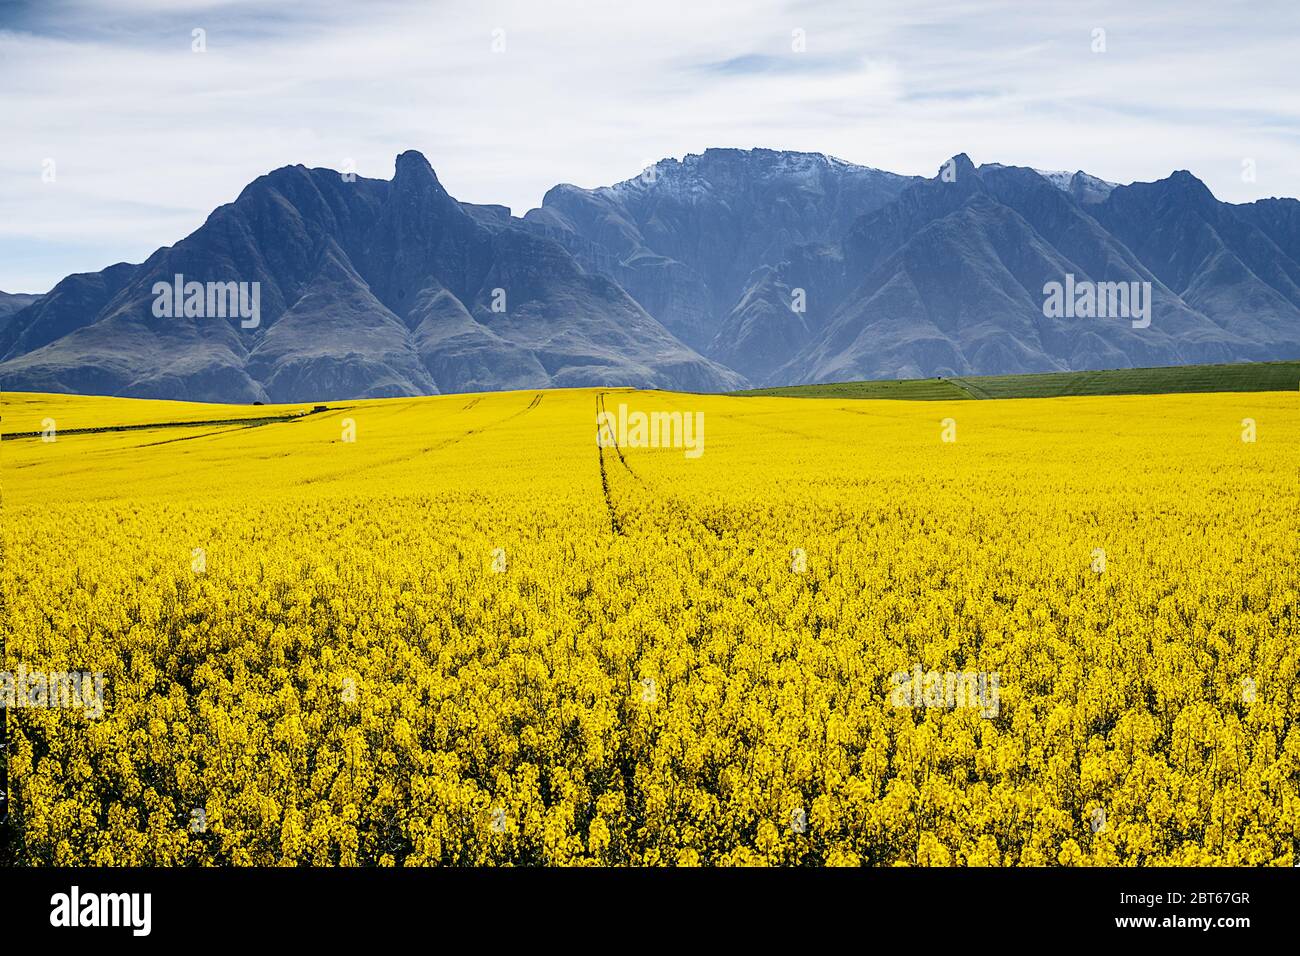 Una scea rurale di canola e campi di grano con basse nuvole contro le montagne, provincia del Capo occidentale, Sudafrica Foto Stock